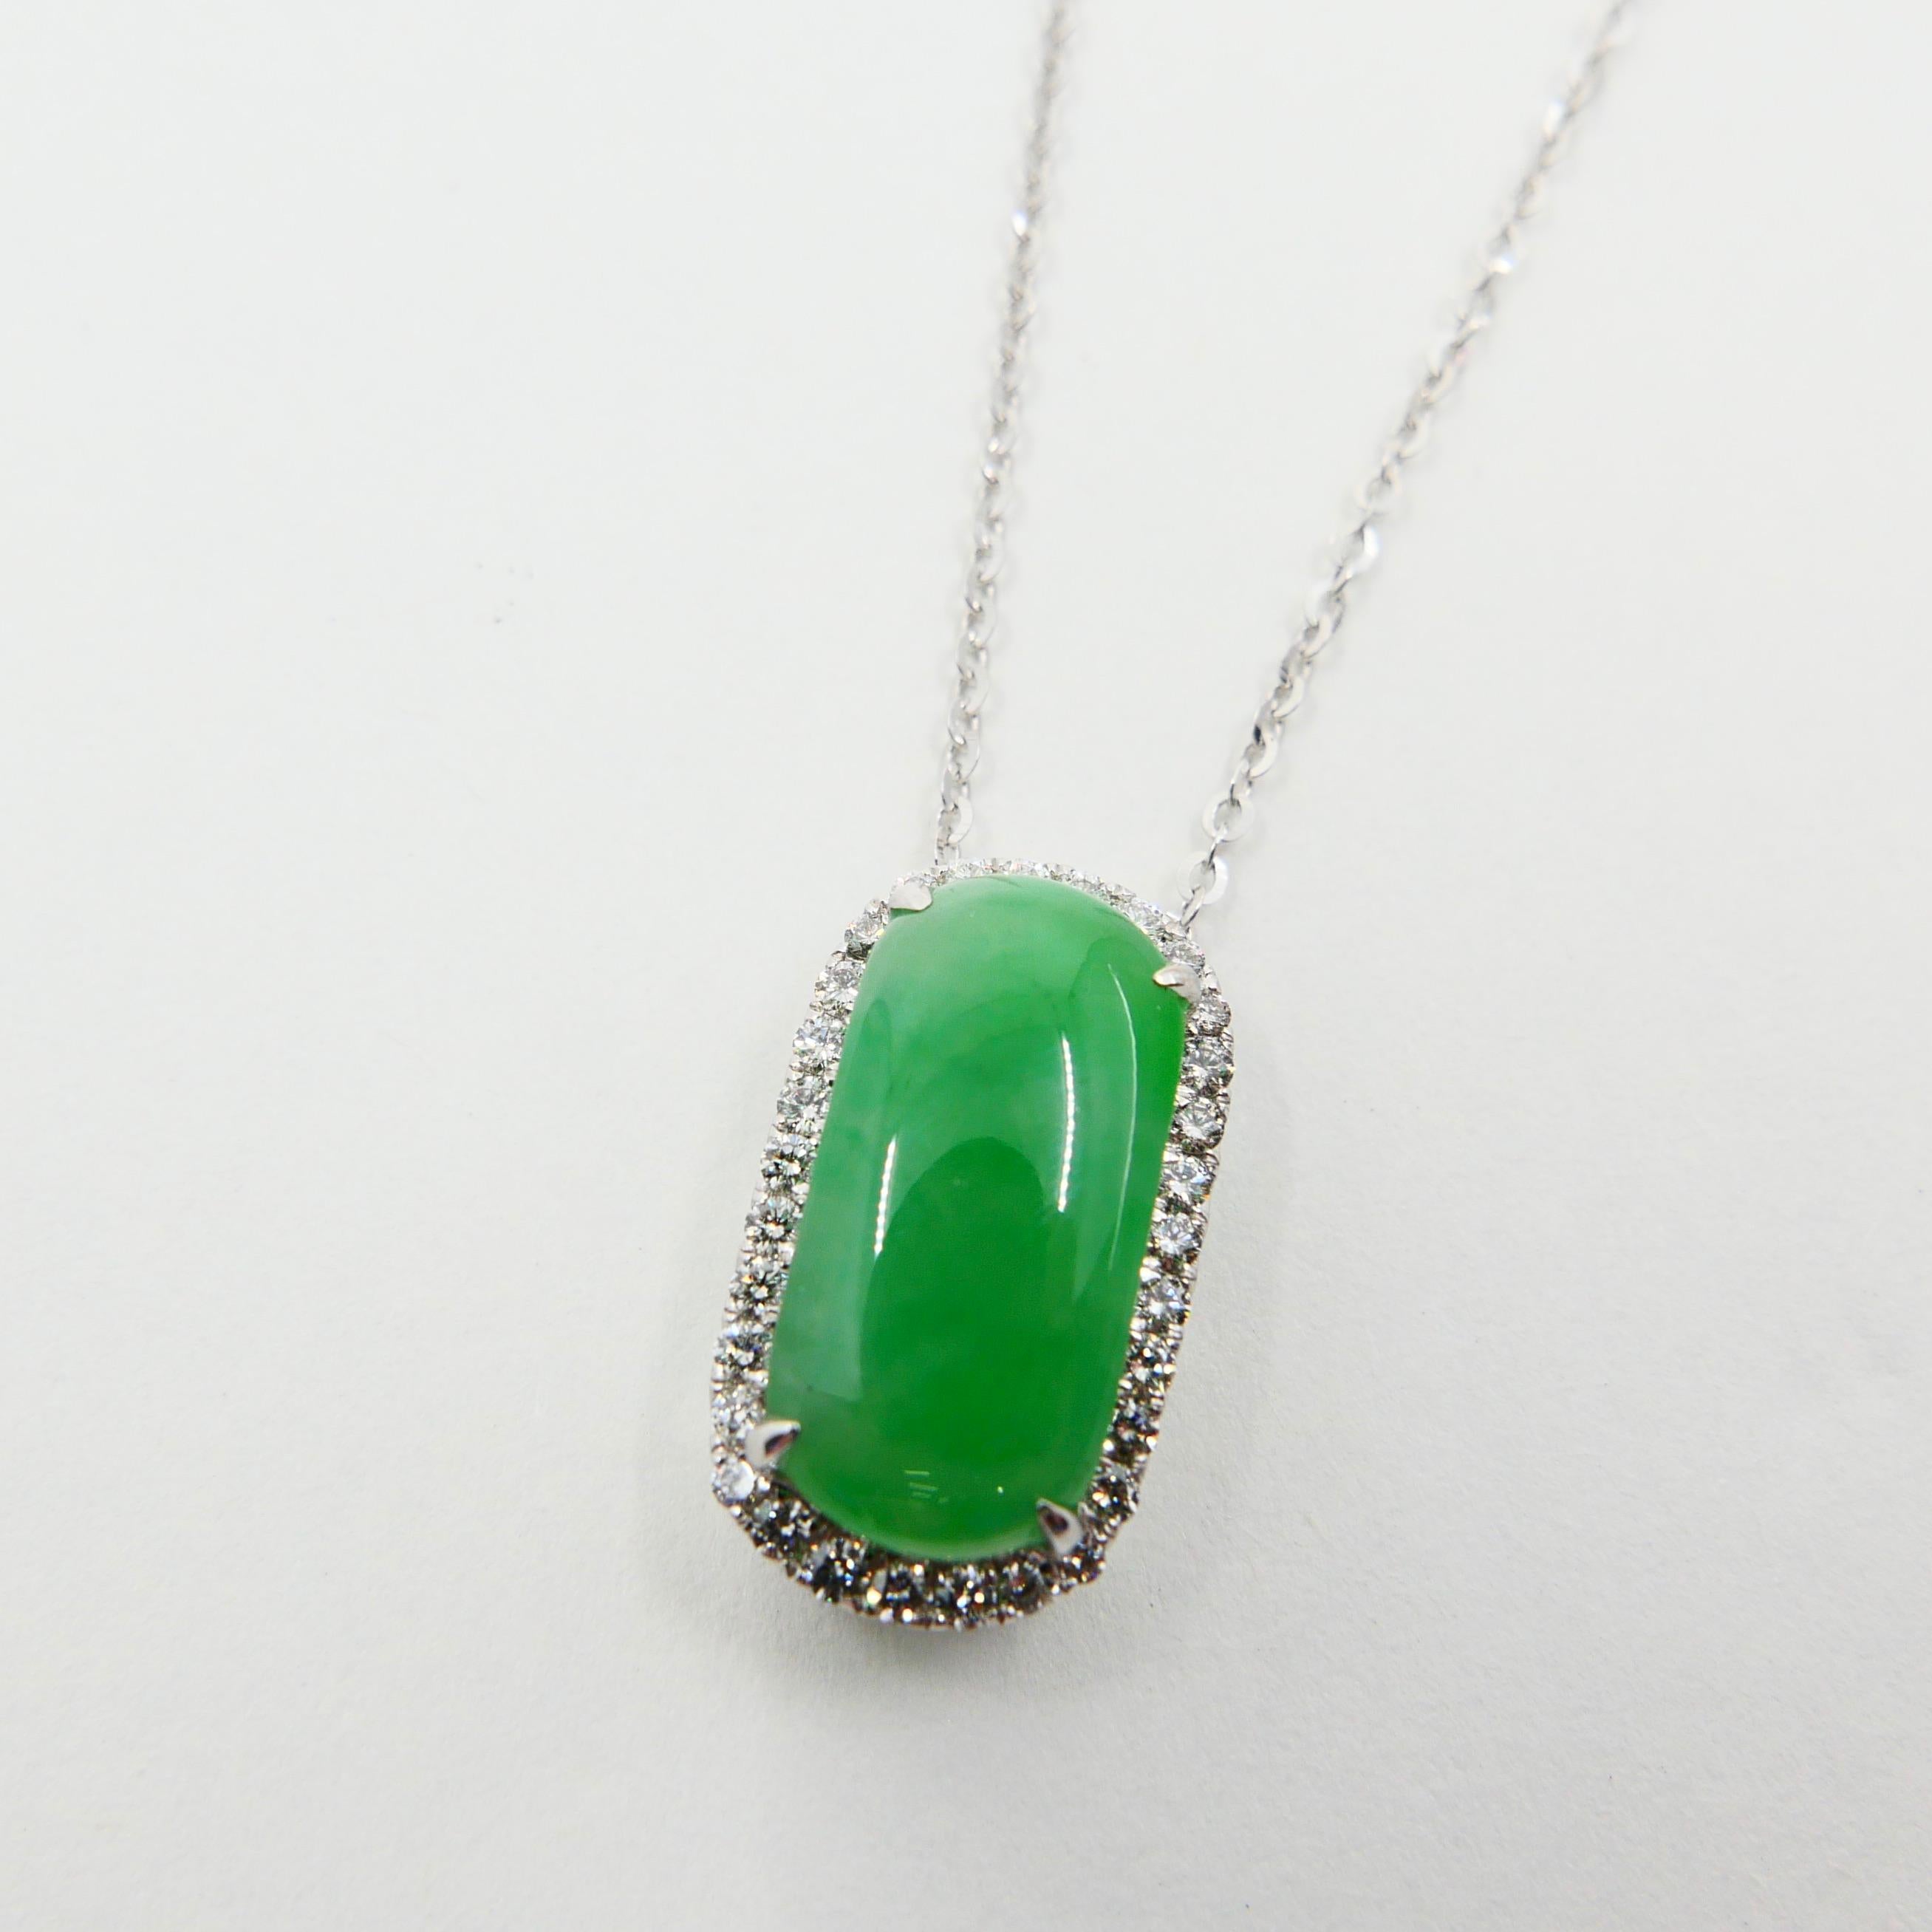 Certified Type A Jadeite Jade Diamond Pendant Drop Necklace, Apple Green Color For Sale 1